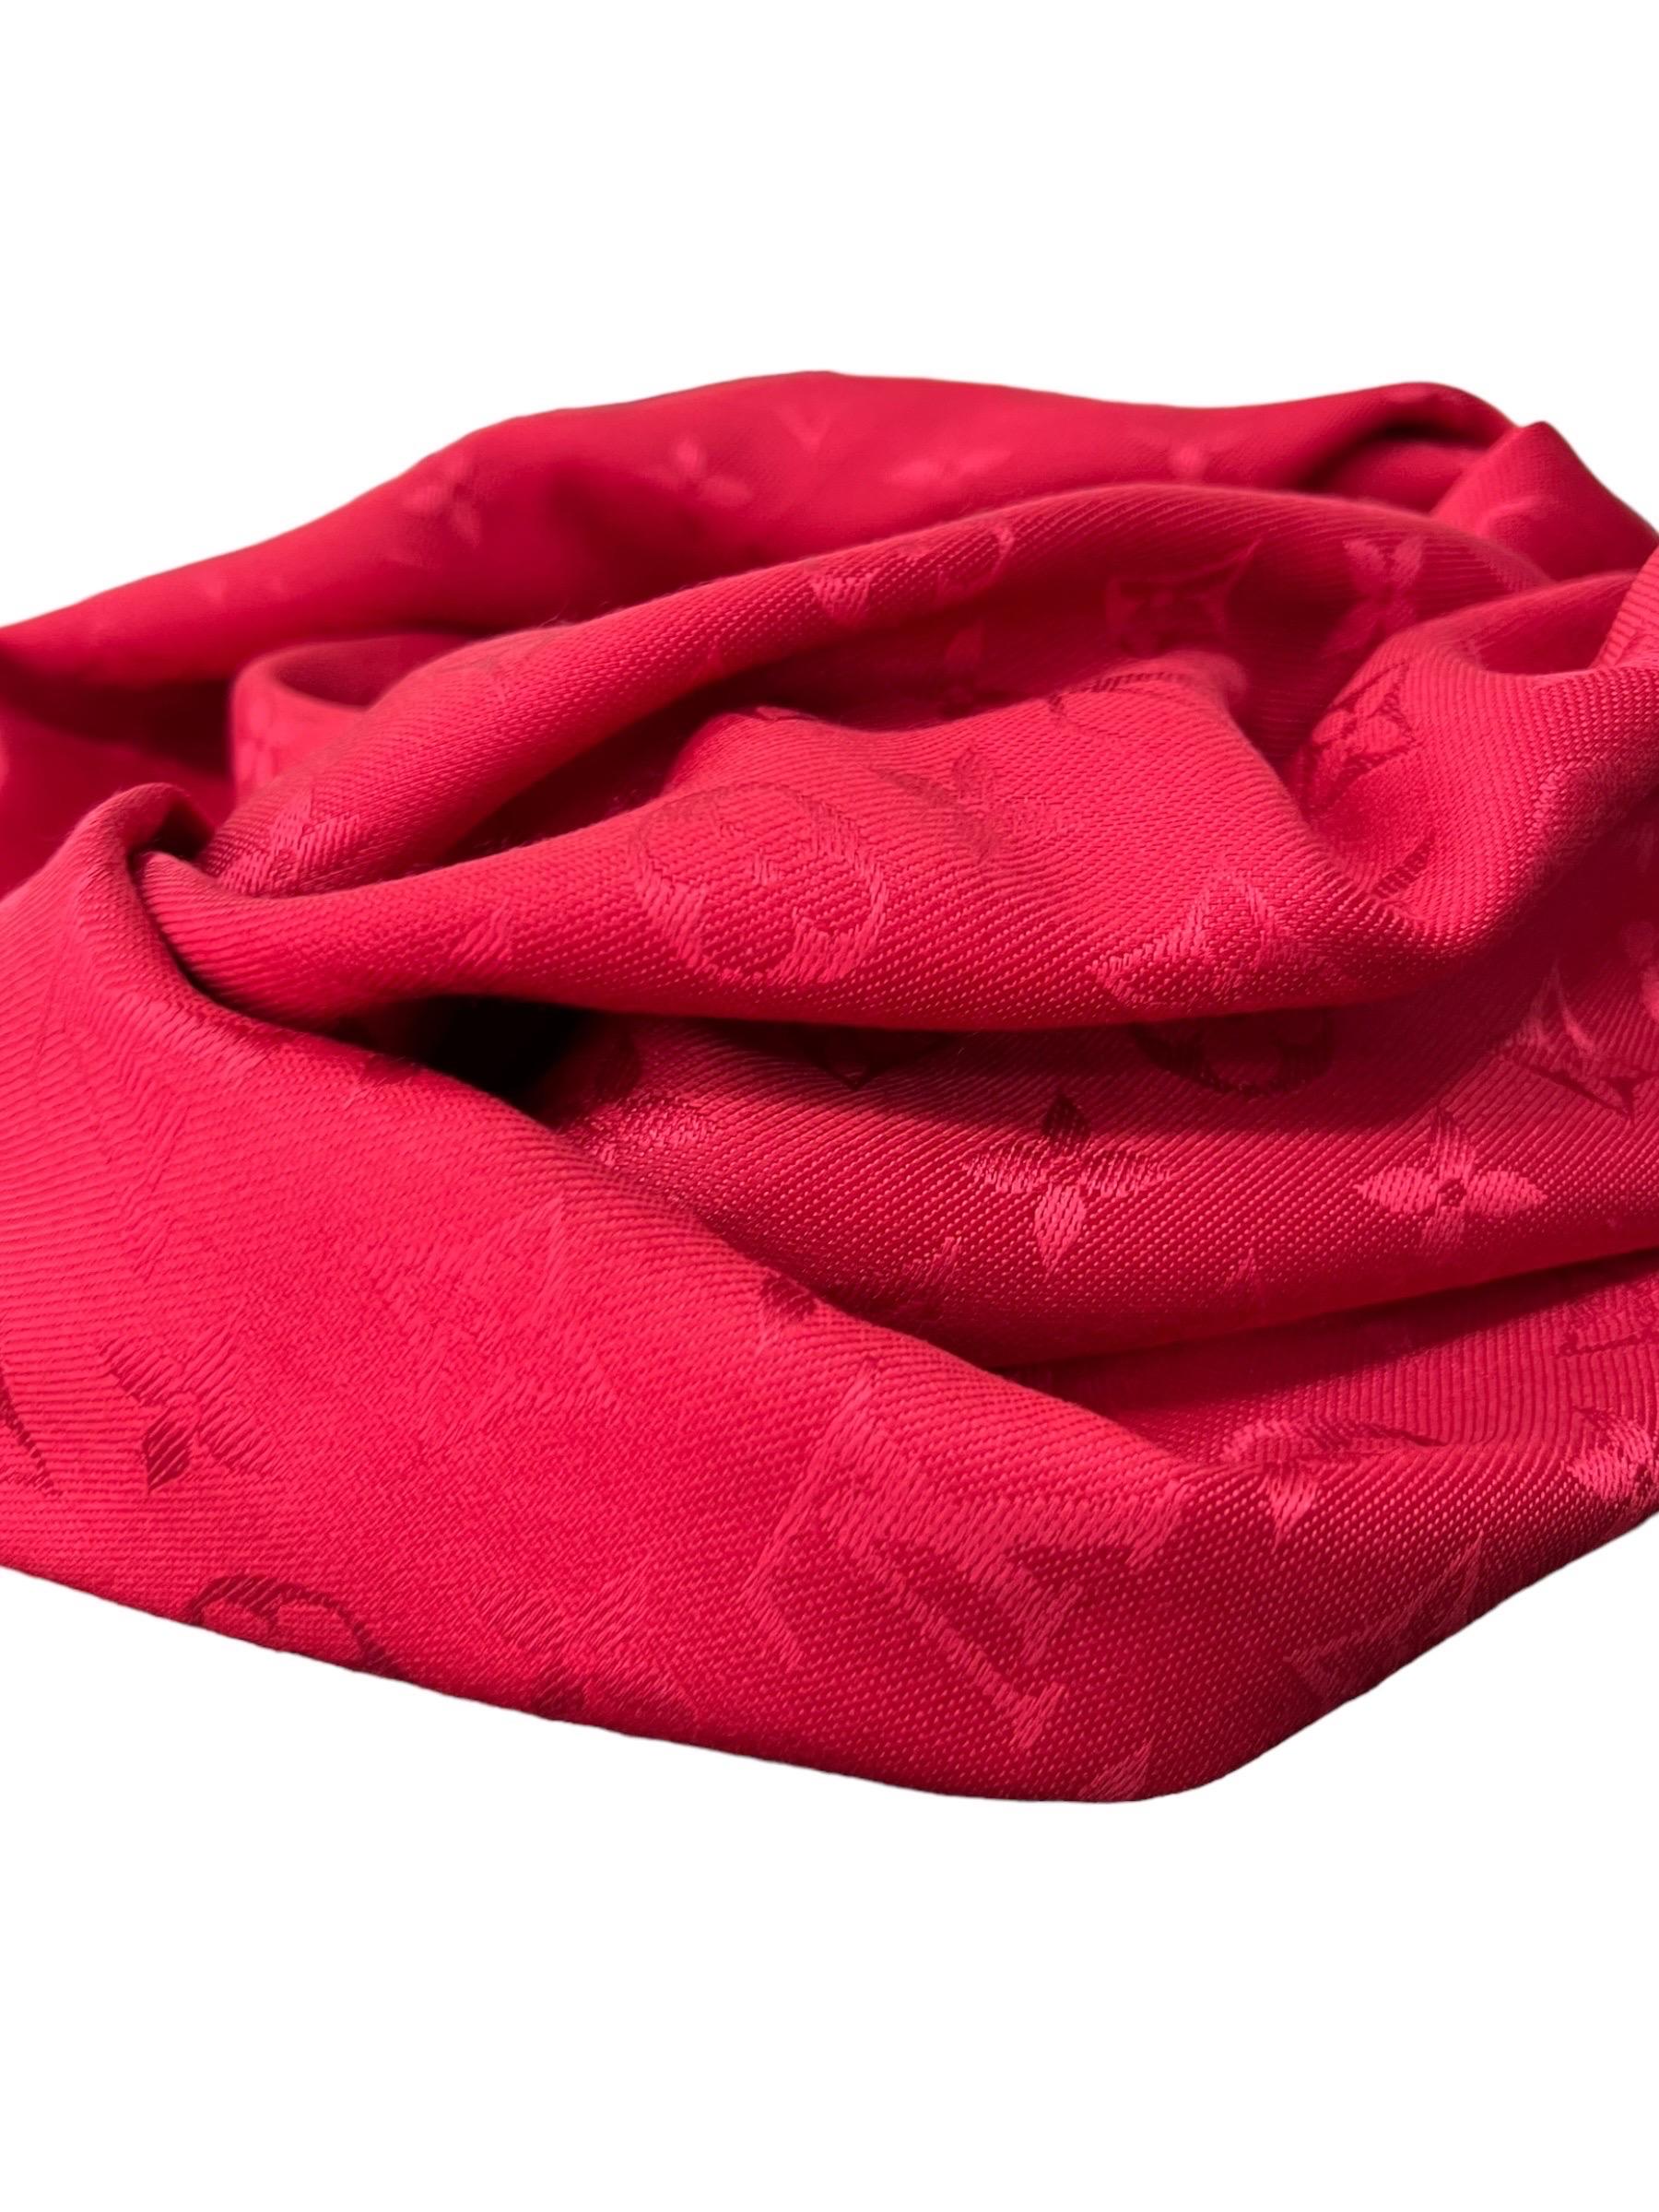 Scialle firmato Louis Vuitton, realizzato in seta e lana nella classica fantasia monogram rosso. Dotato di brevi frange all’estremità, forma quadrata e misura 143 centimetri di altezza e 143 centimetri di lunghezza. Si presenta in ottime